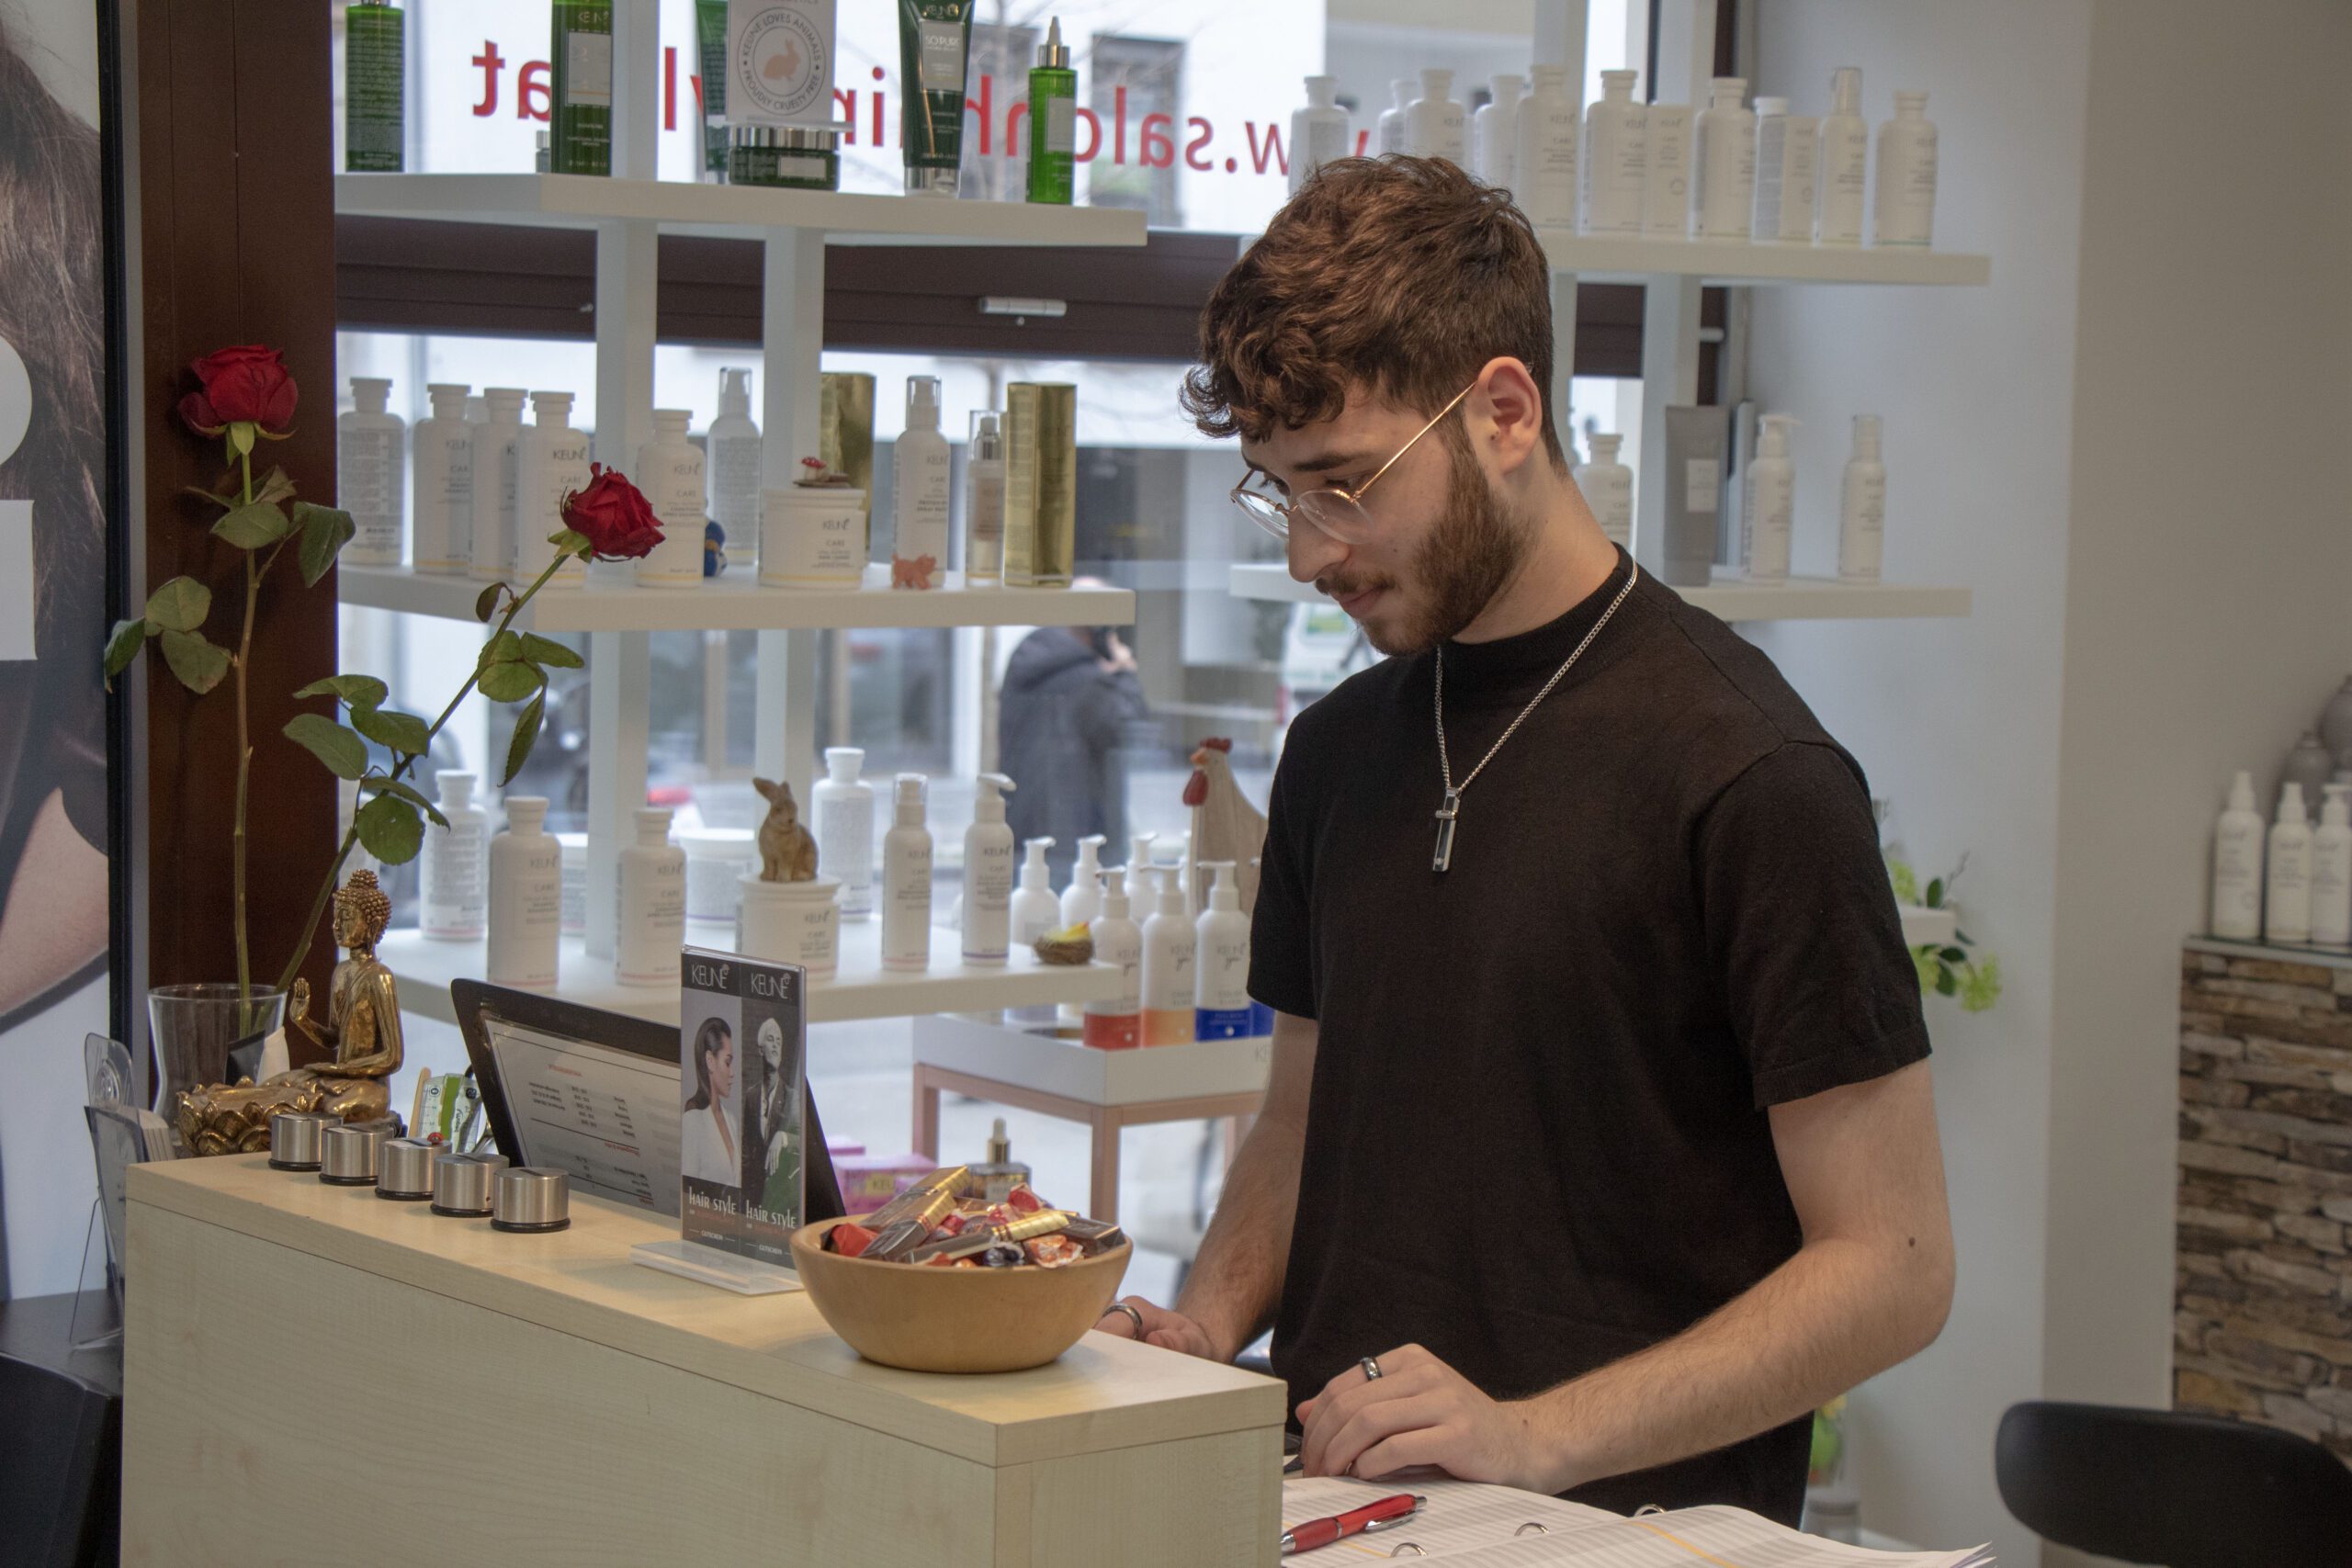 Friseurlehrling Aykut Karabas steht am Empfang hinter dem Thresen und blickt in die Kund:innenkartei, neben ihm sind Produkte und 2 Rosen platziert